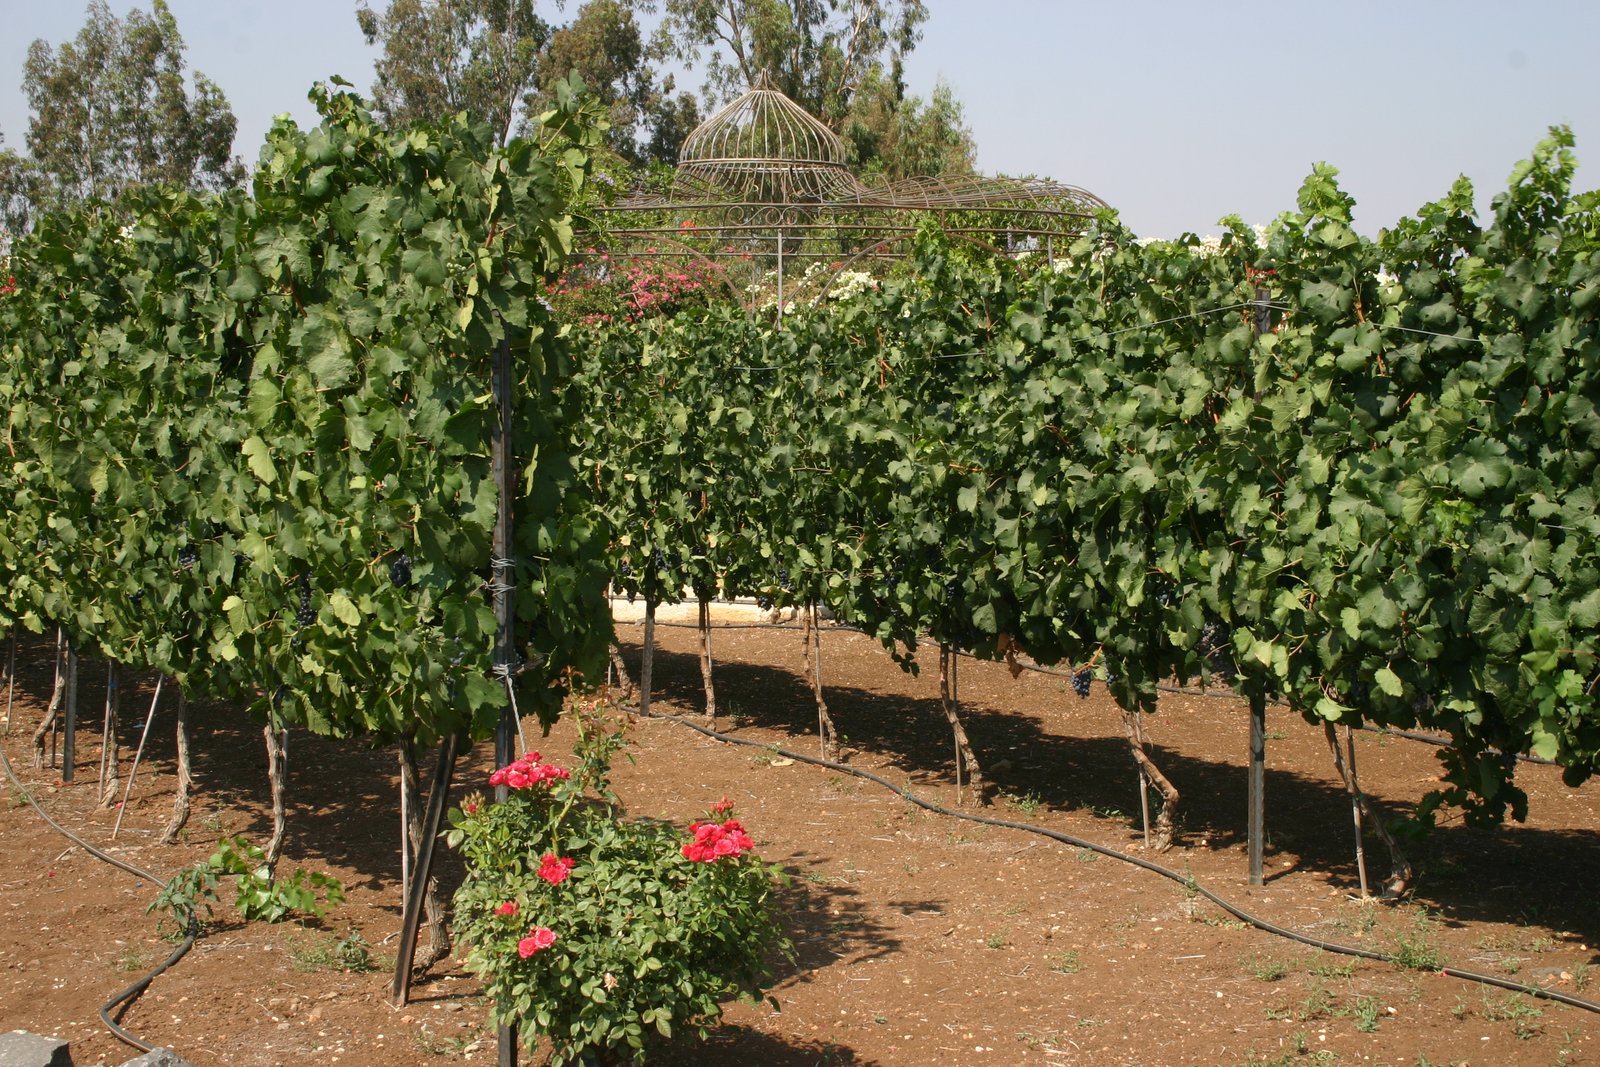 Israeli Wine, Around for Hundreds of Years